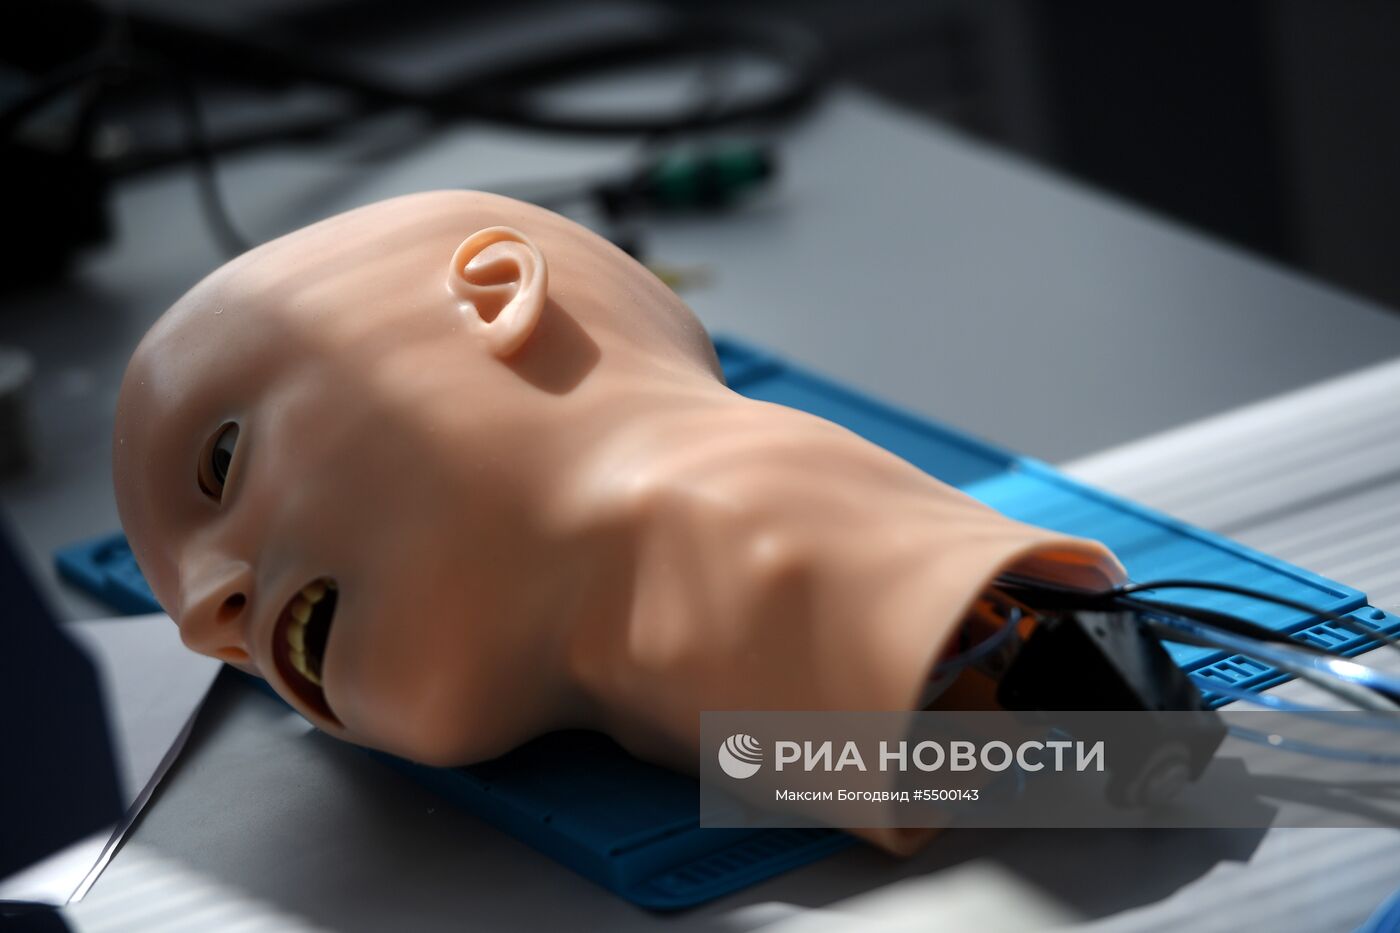 Лаборатория по производству роботов-пациентов в Казани